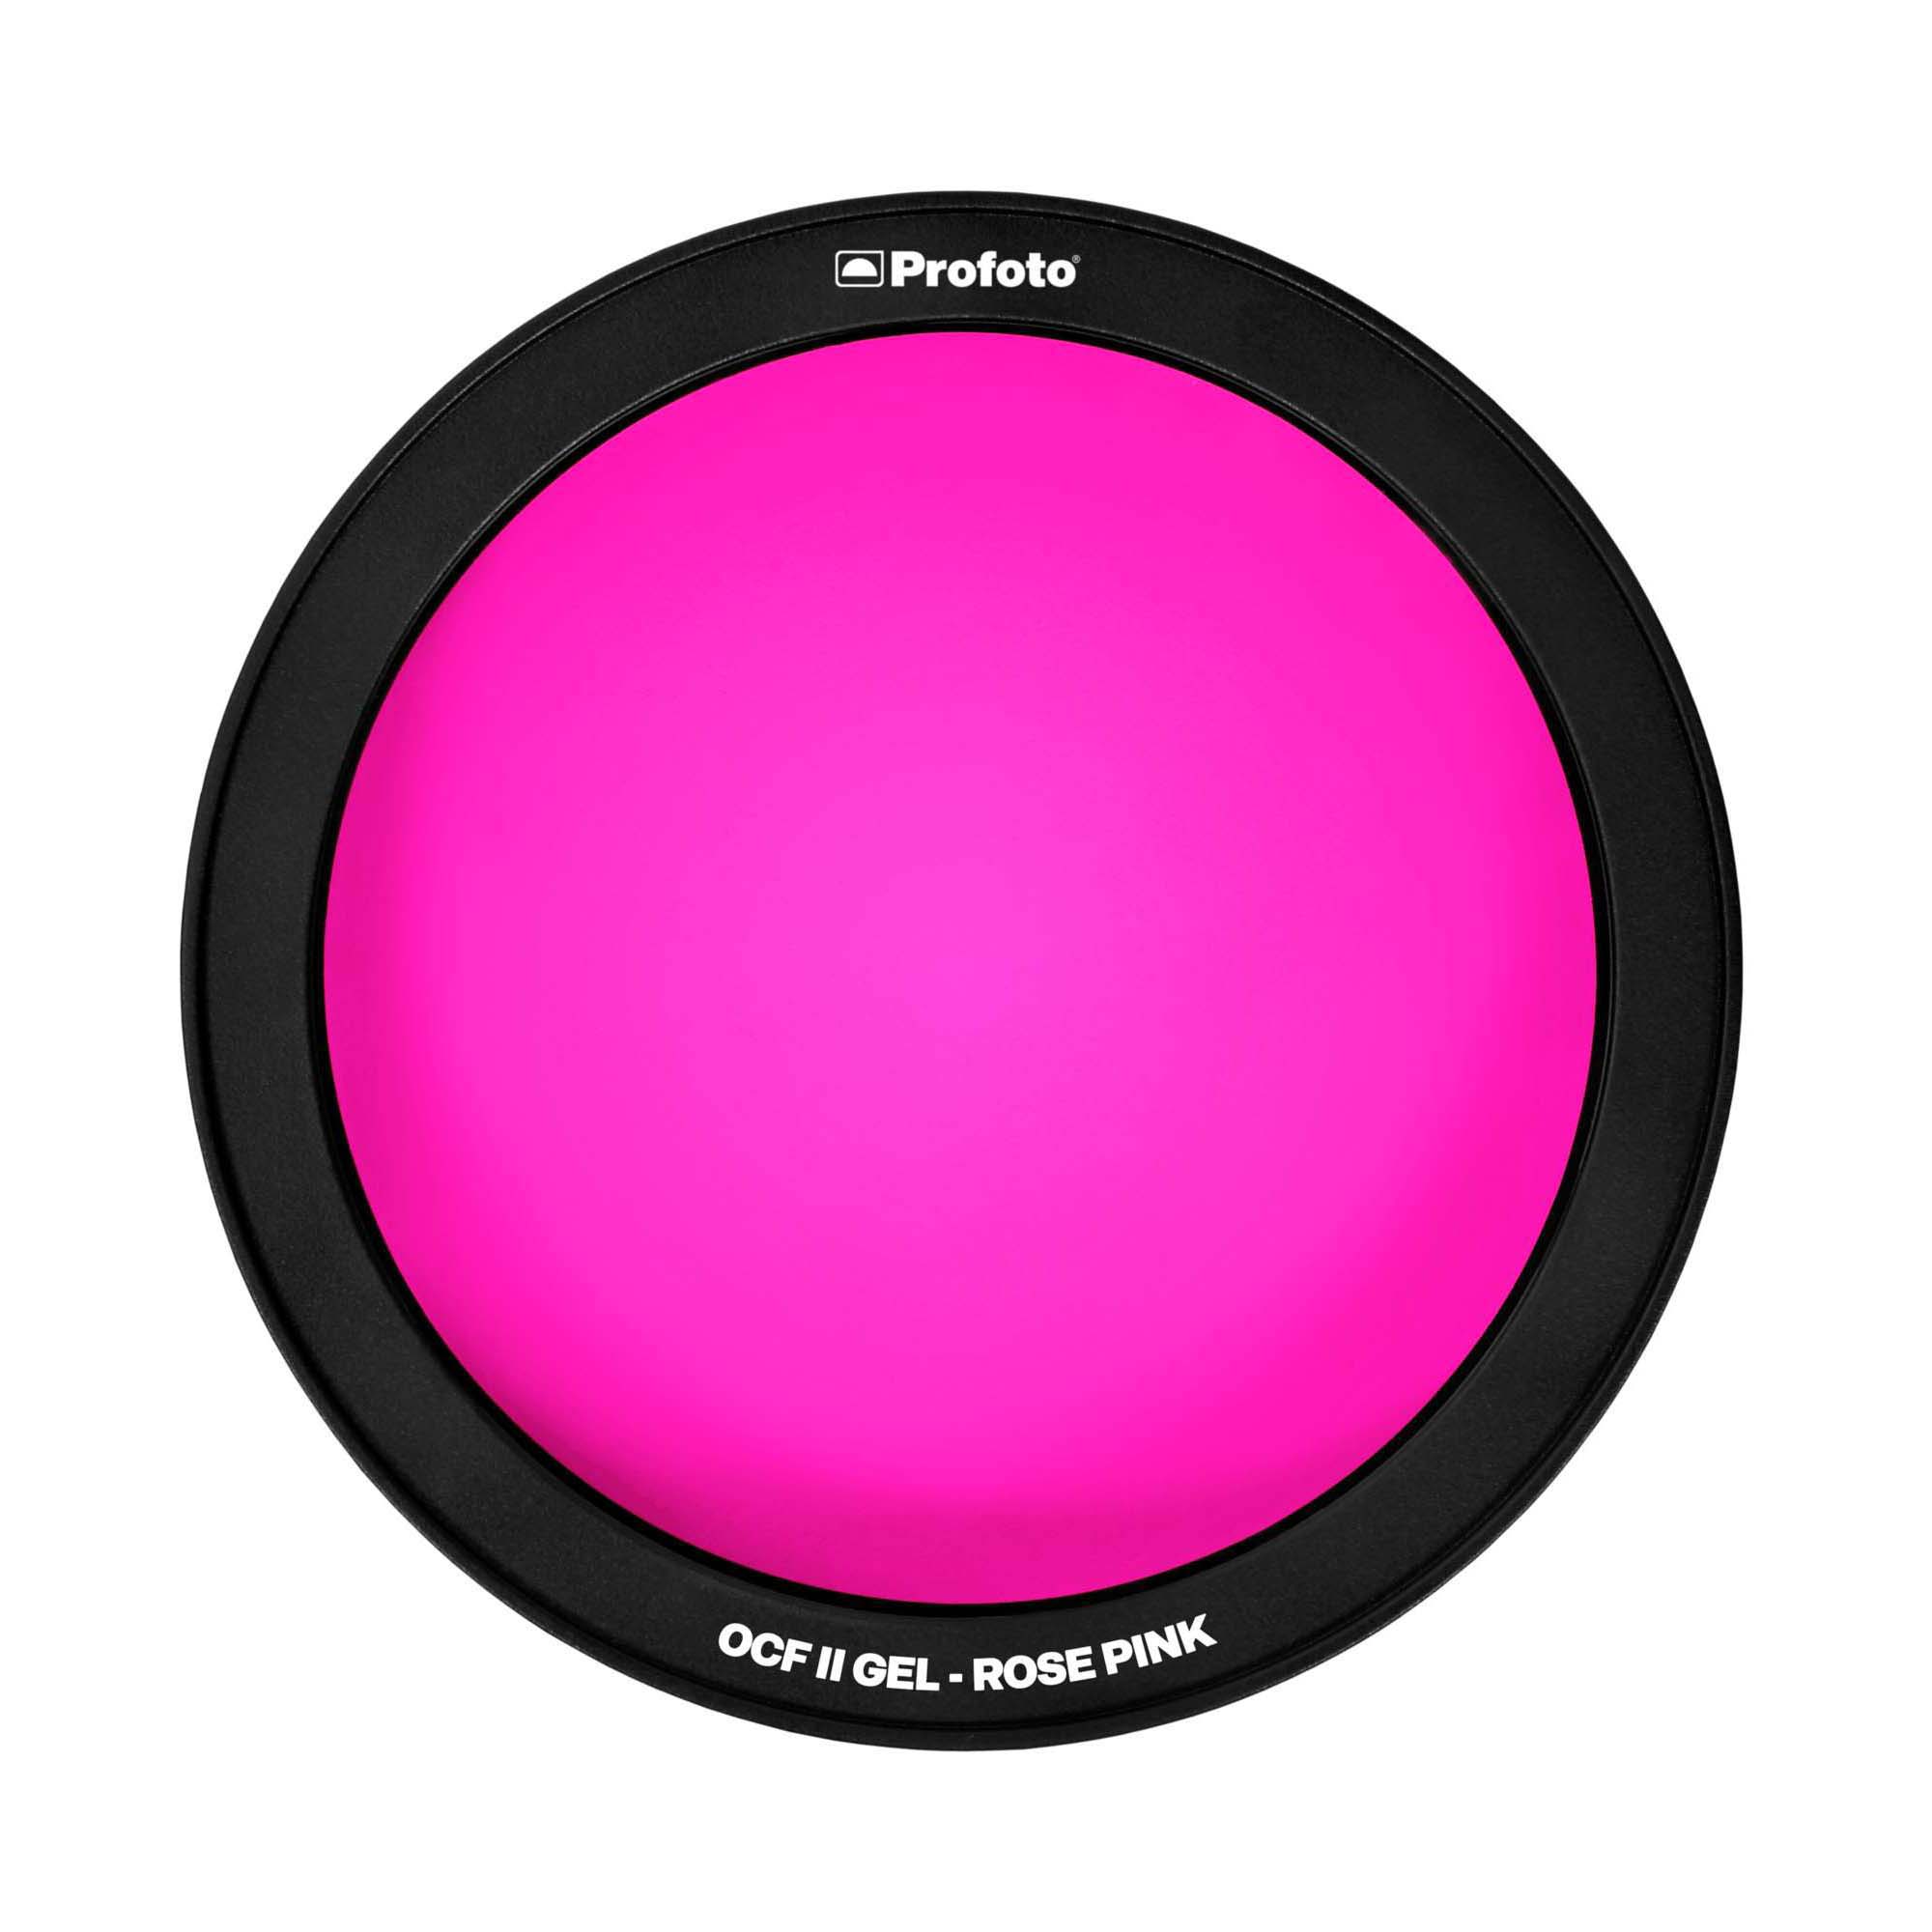 PROFOTO OCF II GEL ROSE PINK PARA B10 - B10 PLUS - B1X